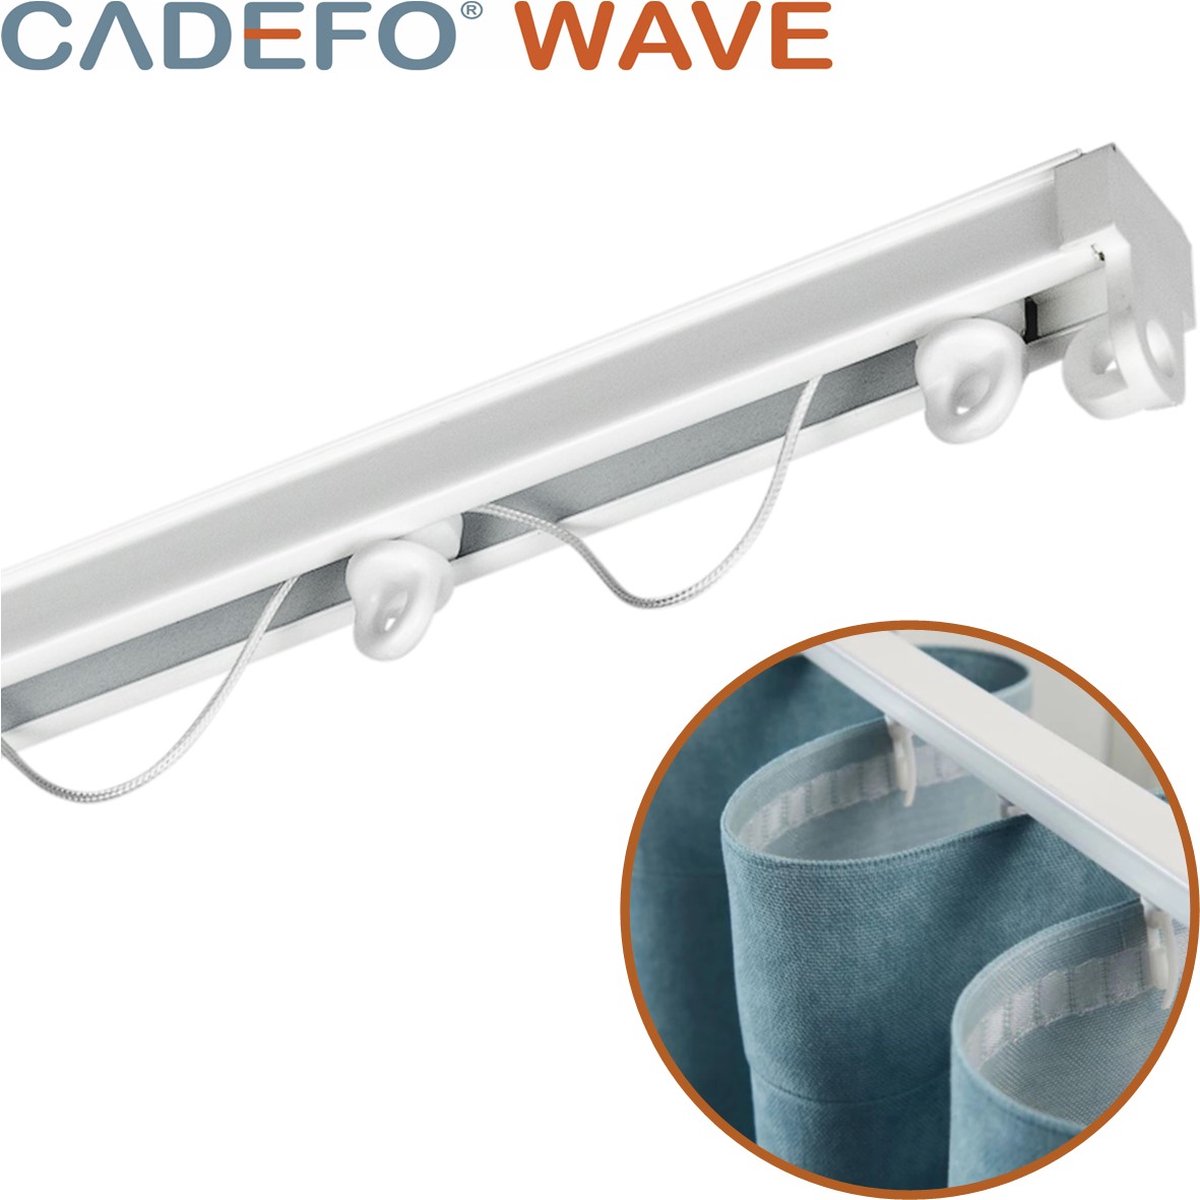 CADEFO WAVE (501 - 550 cm) Gordijnrails - Compleet op maat! - UIT 1 STUK - Leverbaar tot 6 meter - Plafondbevestiging - Lengte 516 cm